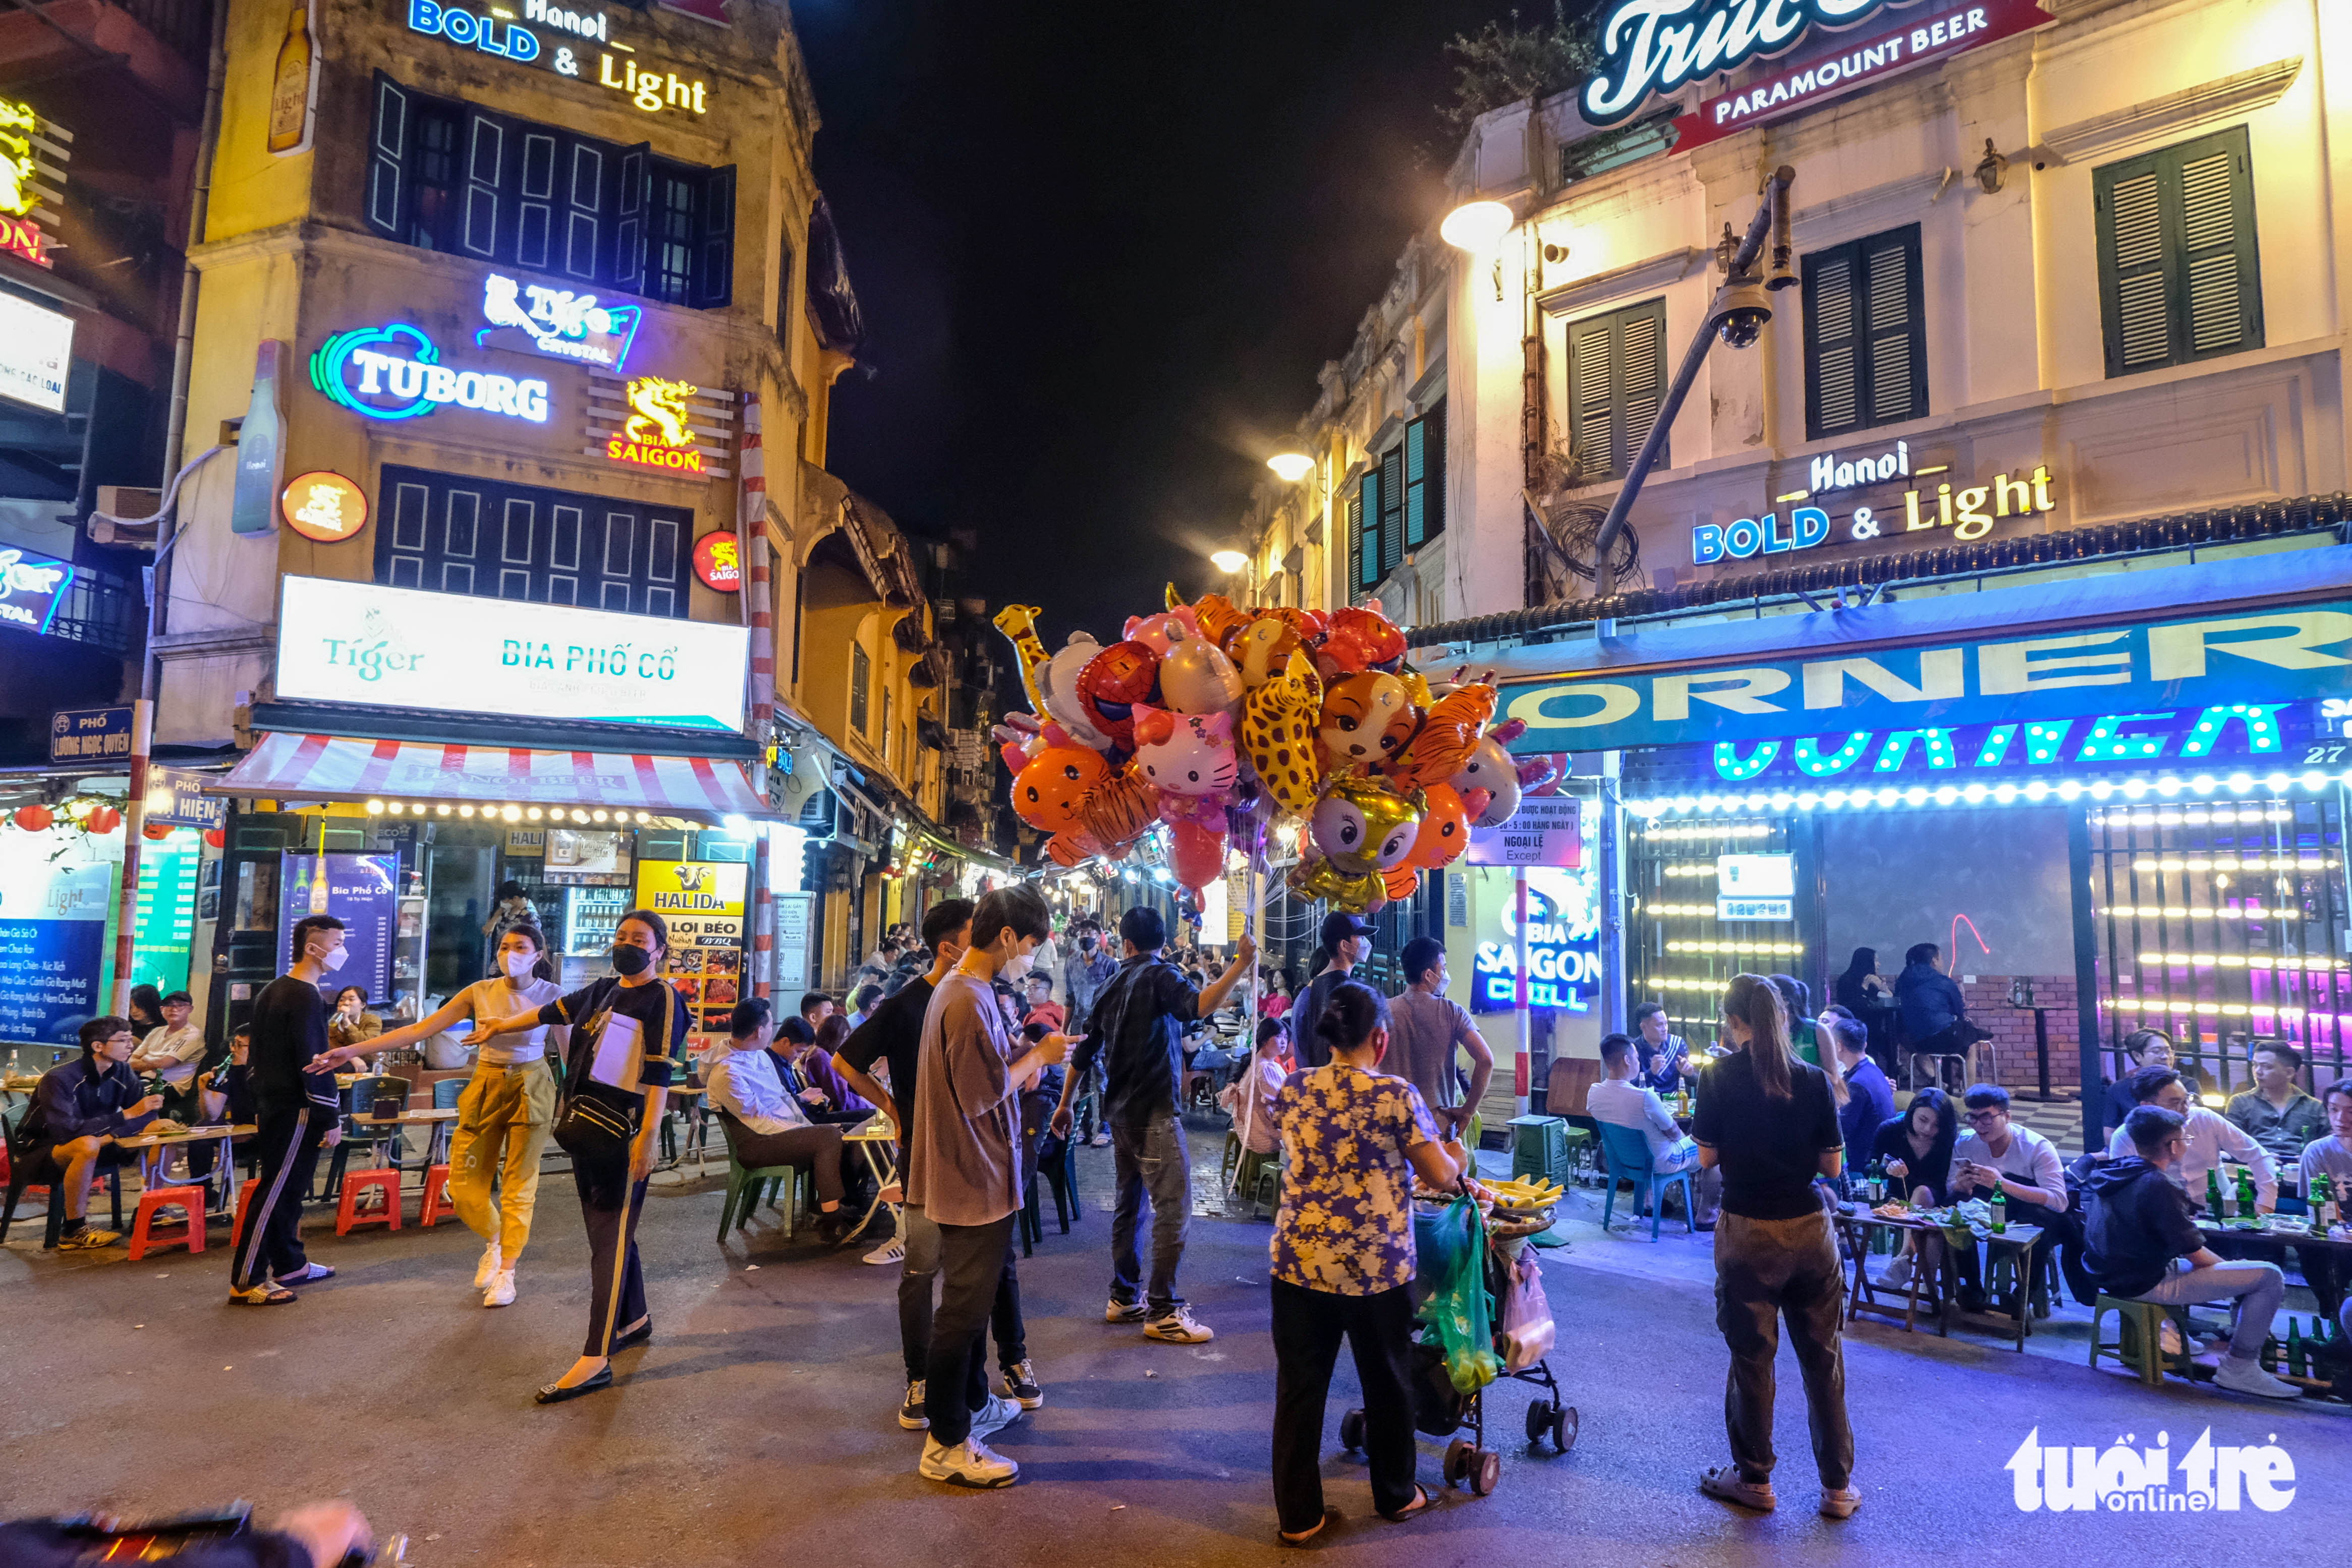 Removal of night curfew brings nightlife back in Hanoi